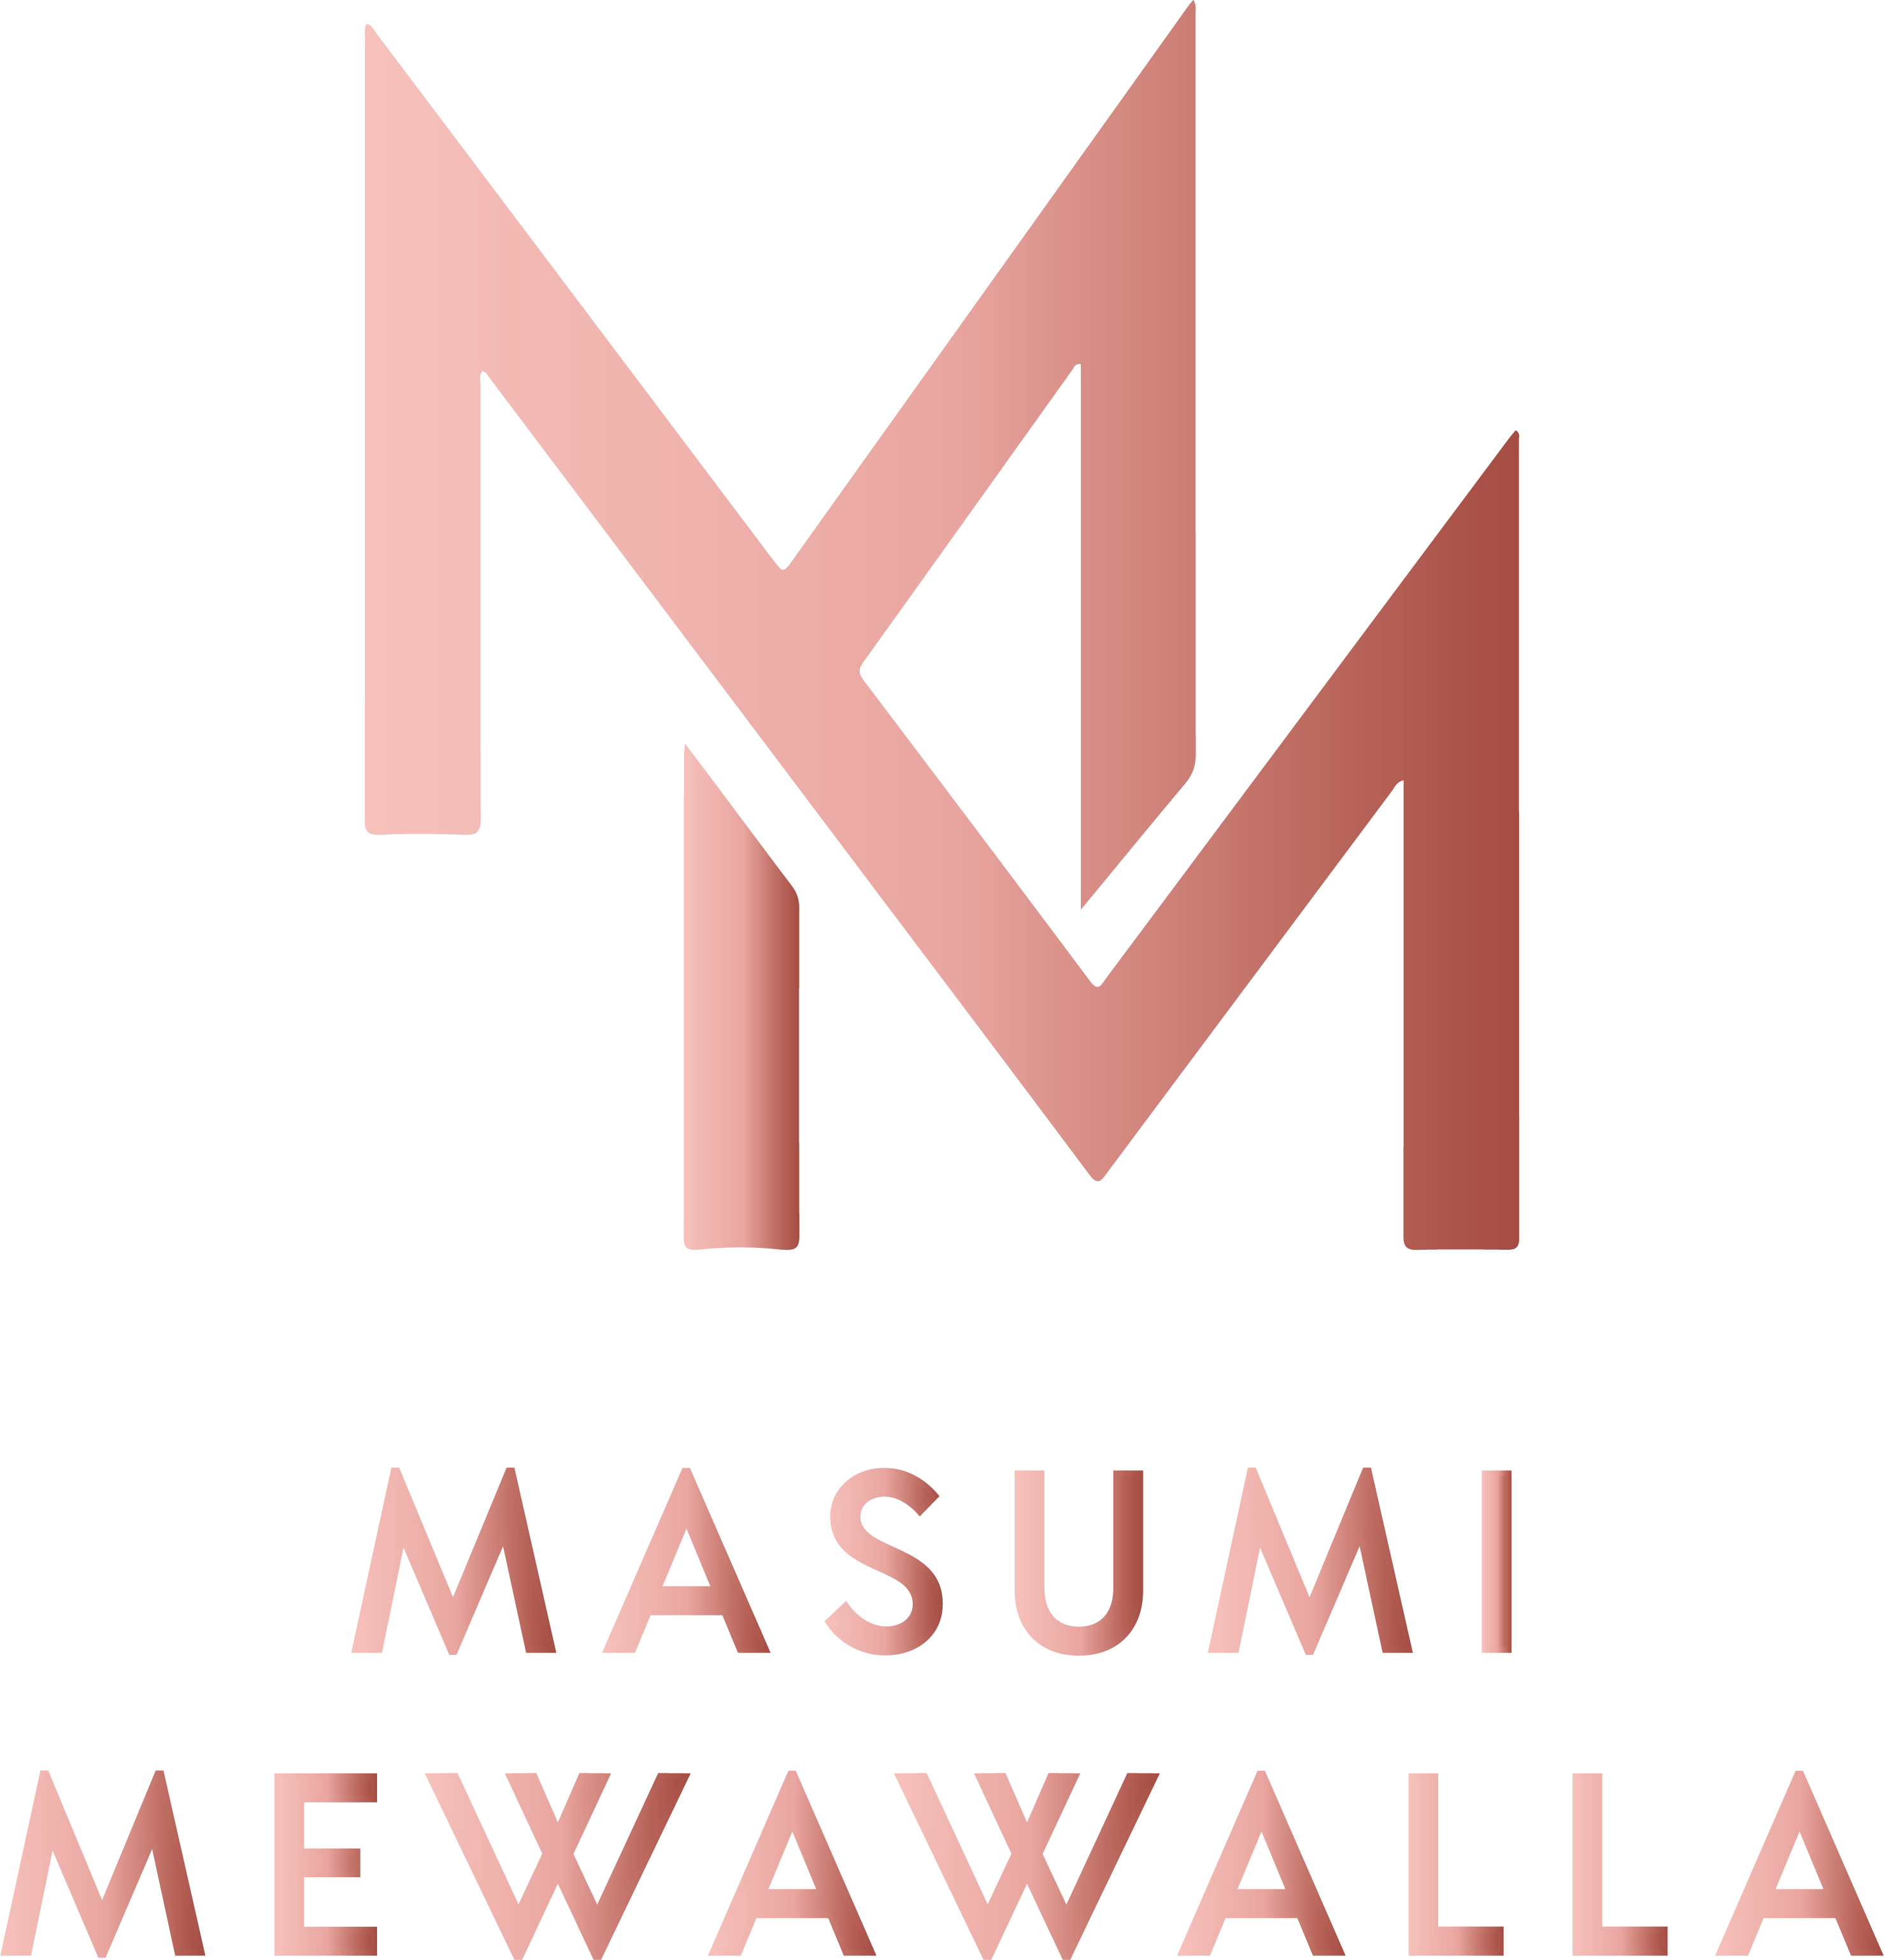 Masumi Mewawalla